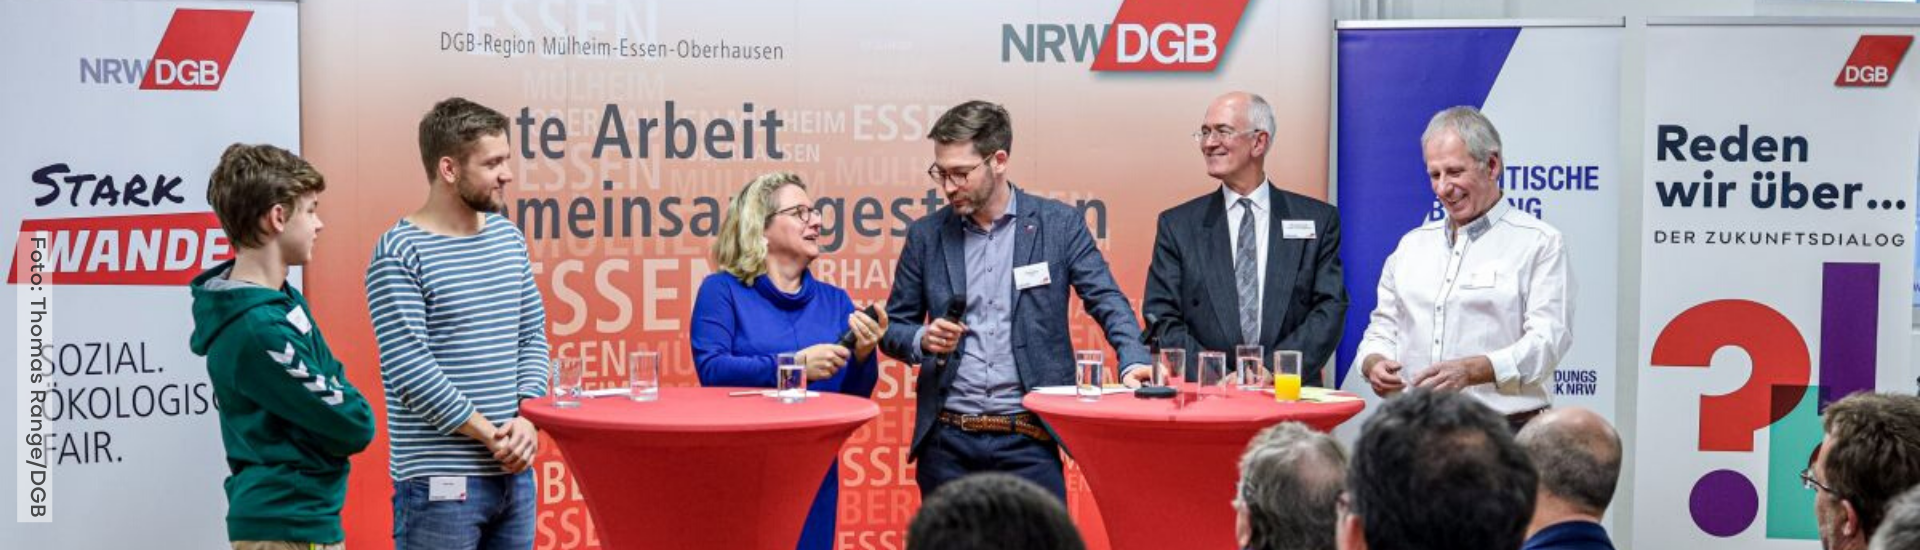 Bundesumweltministerin Svenja Schulze bei DGB-Veranstaltung mit Fridays for Future in Essen